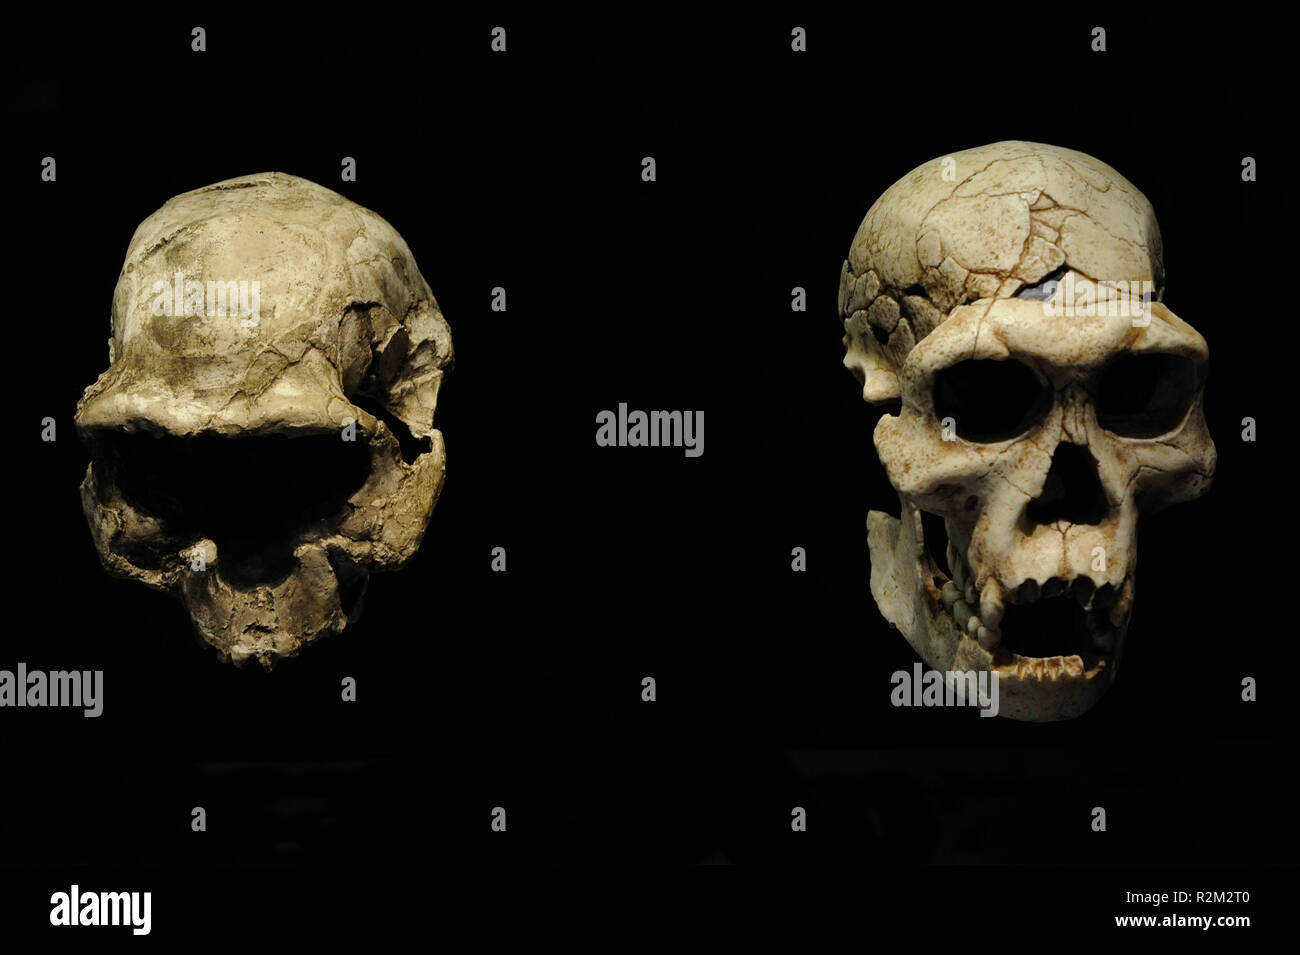 Homo georgicus. Sur la gauche, la reproduction du crâne D2282, probablement, d'une jeune femme. Capacité crânienne, 650-660 cc ; à droite, la reproduction du crâne et de la mandibule D2700 D2735 correspondant à un homme. De 40 à 50 kg, poids. Taille, 150 cm. Capacité crânienne, 600-700 cc. 1,8 millions d'années. Du Pléistocène inférieur. L'habitat, les forêts de la steppe. Trouvés dans Dmanisi (Géorgie). Musée Archéologique National. Madrid. L'Espagne. Banque D'Images